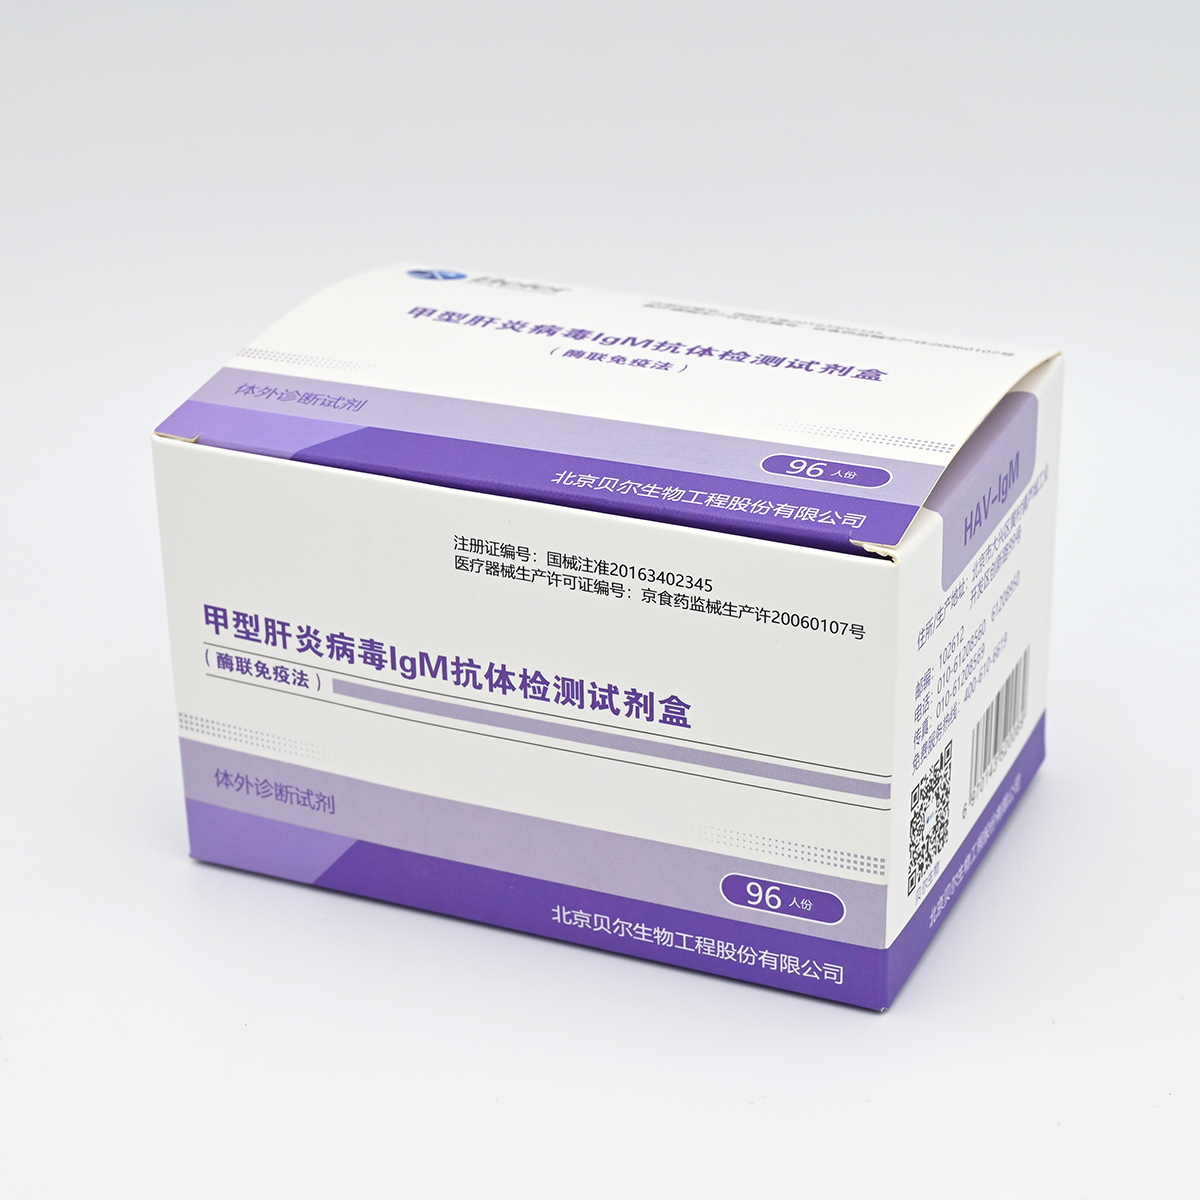 【贝尔】甲型肝炎病毒IgM抗体检测试剂盒(HAV-IgM)(酶联免疫法)